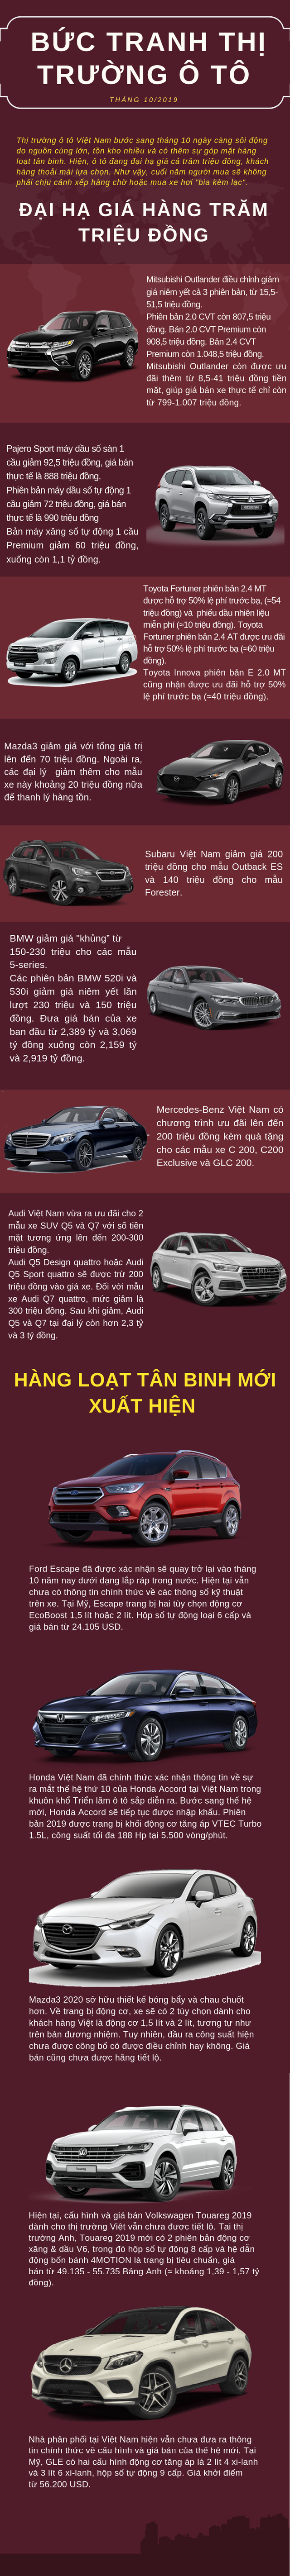  Bức tranh thị trường ô tô Việt tháng 10/2019: Xe sang giảm giá cao nhất 300 triệu đồng, hàng loạt tân binh mới xuất hiện  - Ảnh 1.